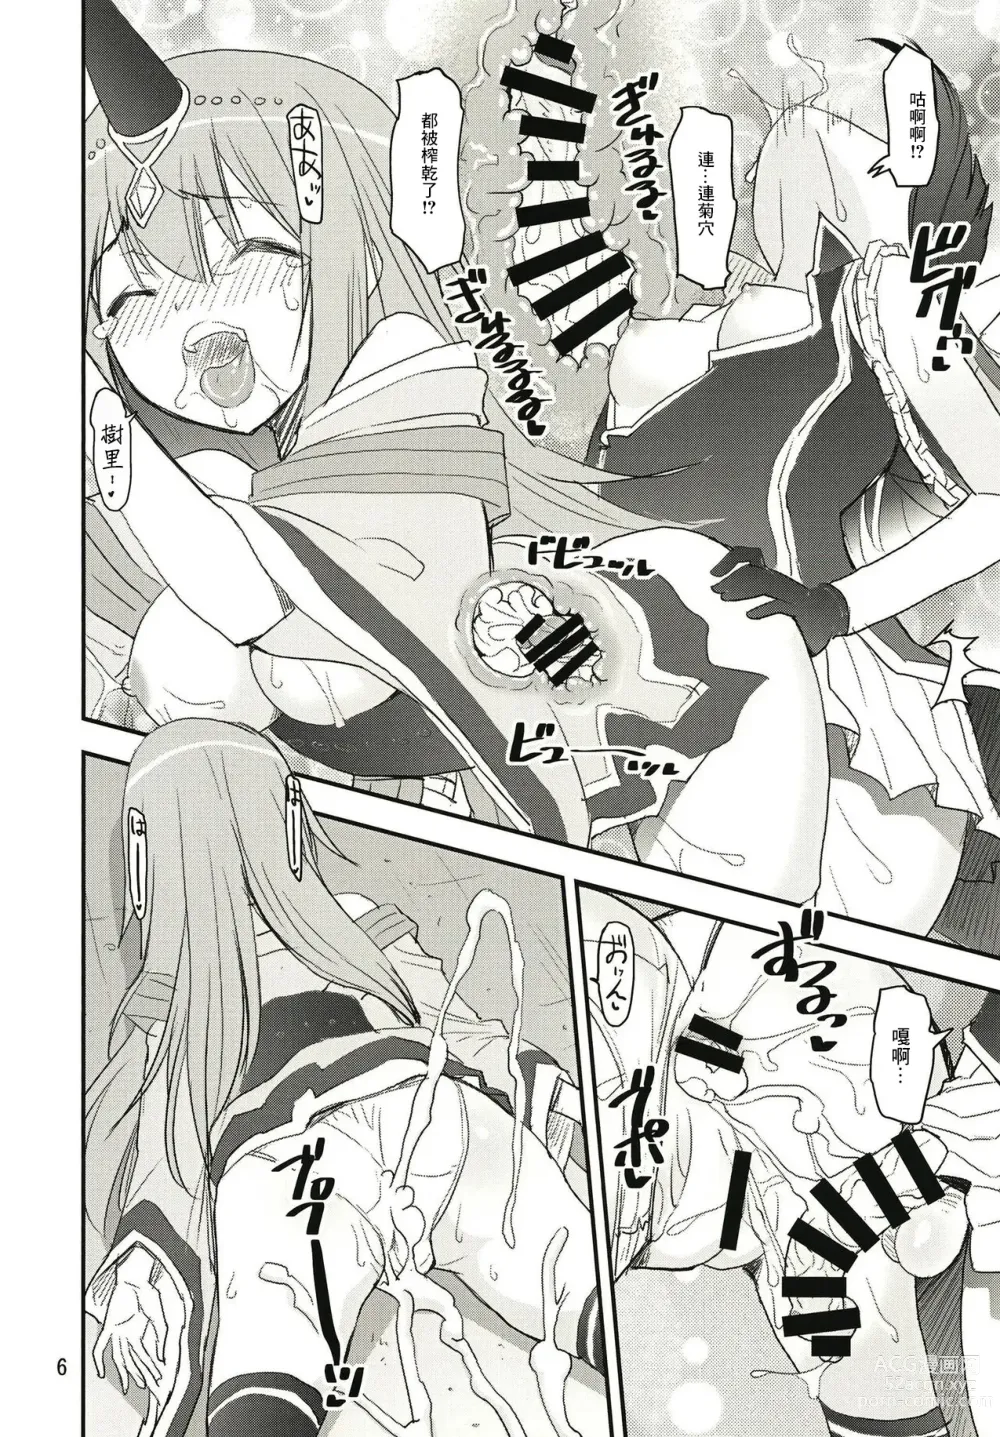 Page 6 of doujinshi Mashou no Yuna-san